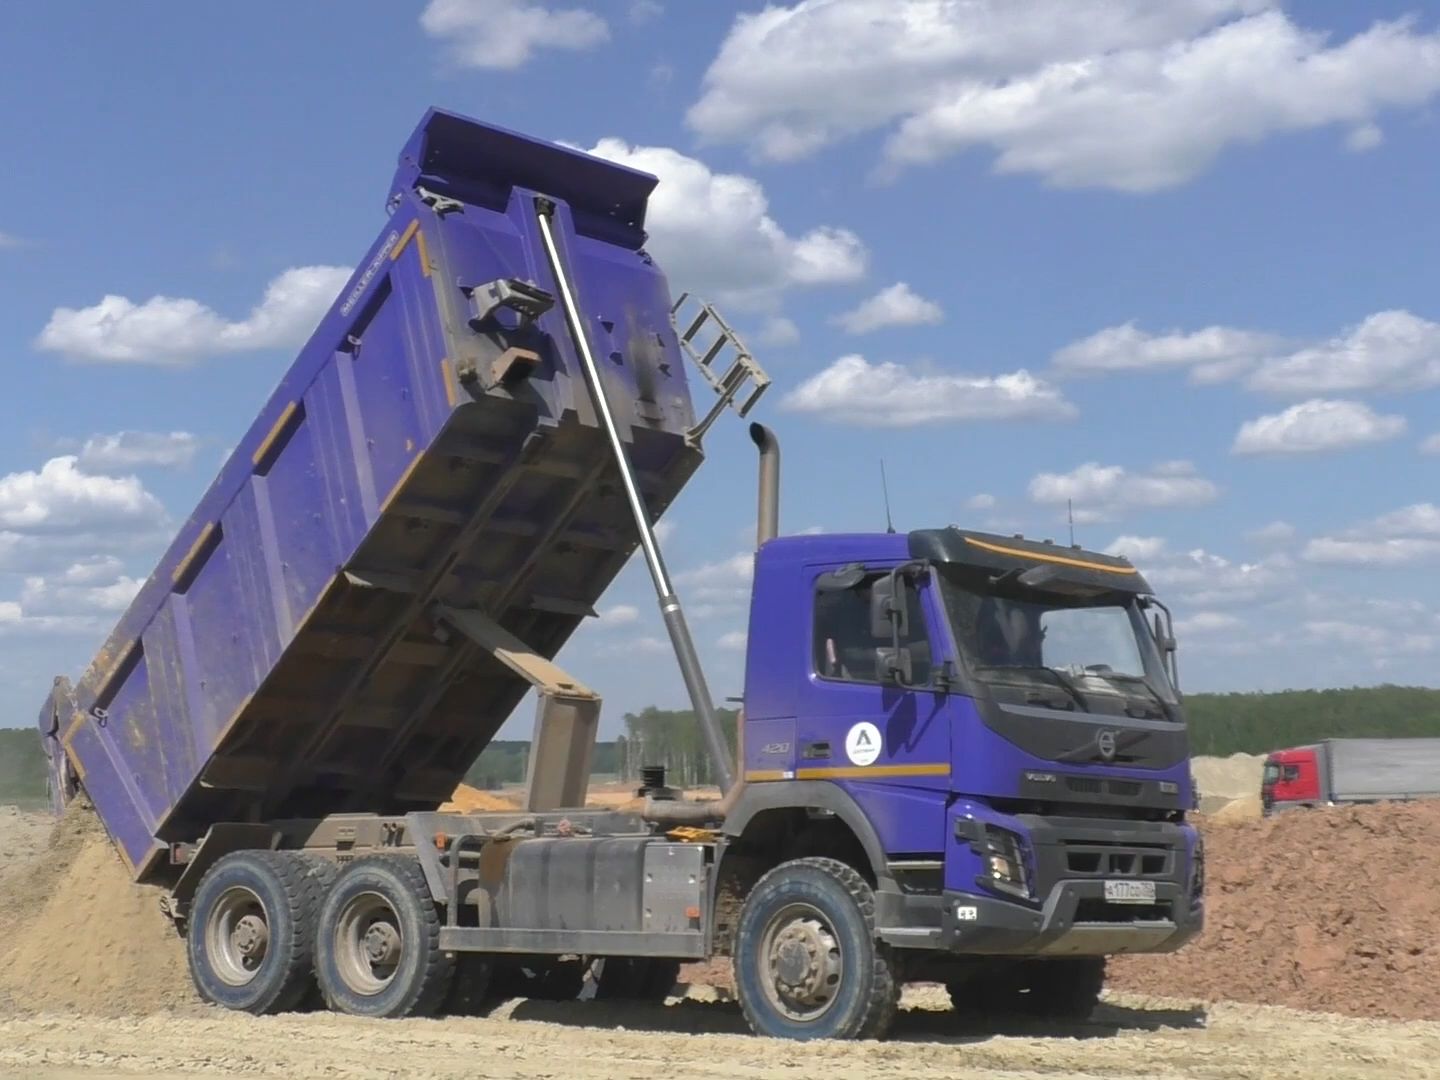 沃尔沃fmx 6x6轮重型自卸卡车在俄罗斯工地工作